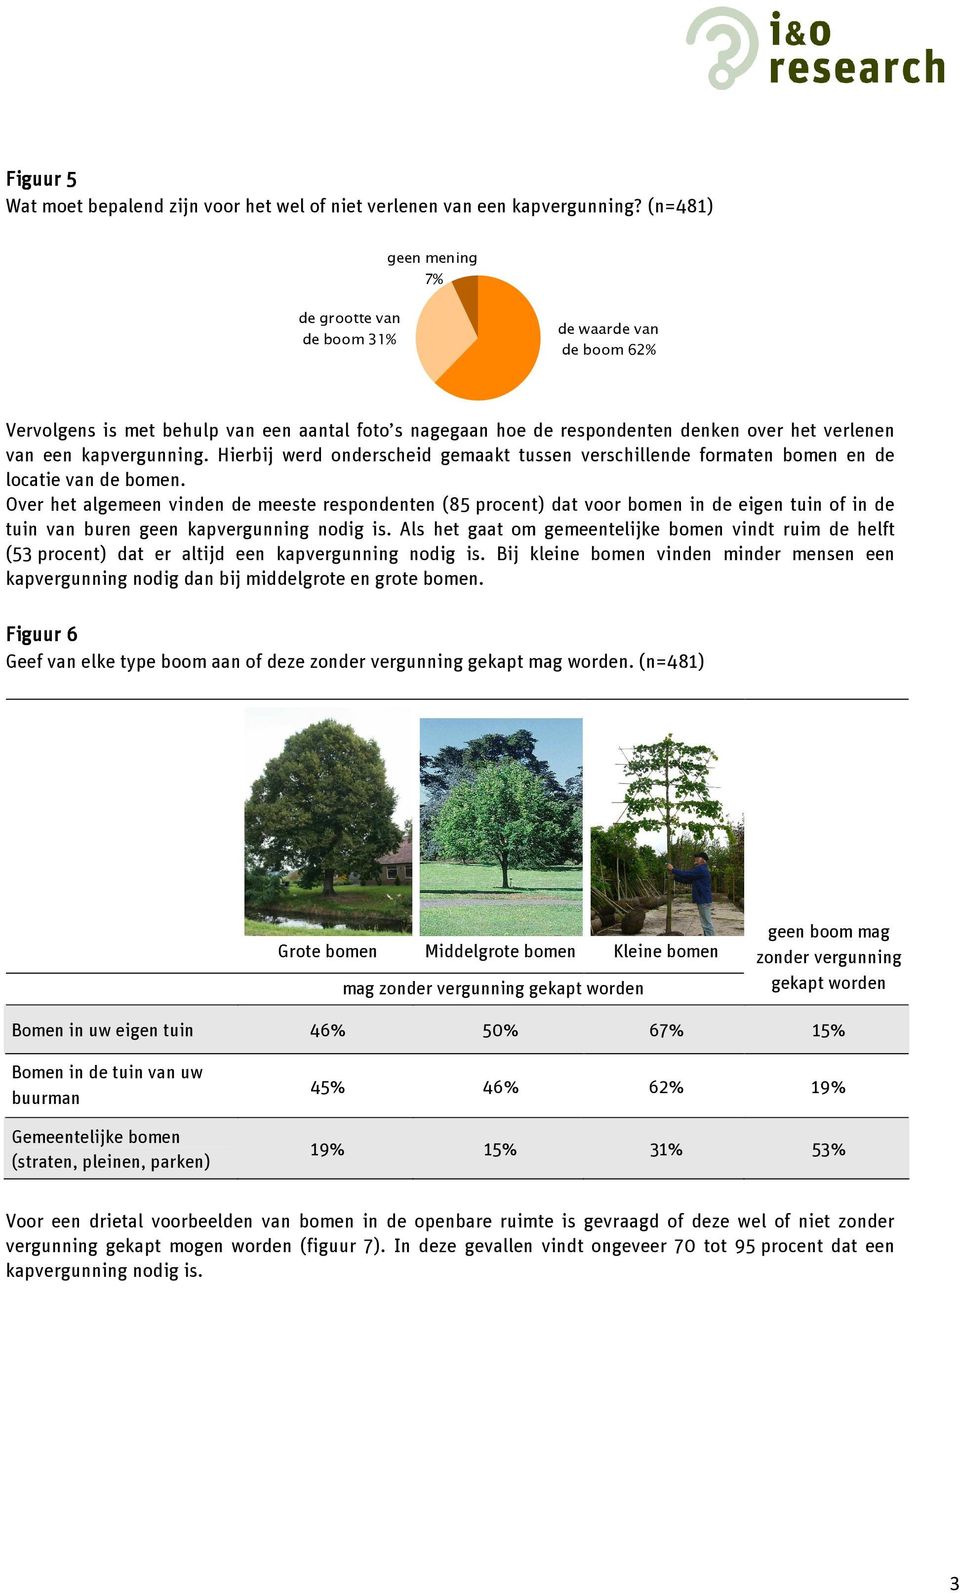 Hierbij werd onderscheid gemaakt tussen verschillende formaten bomen en de locatie van de bomen.